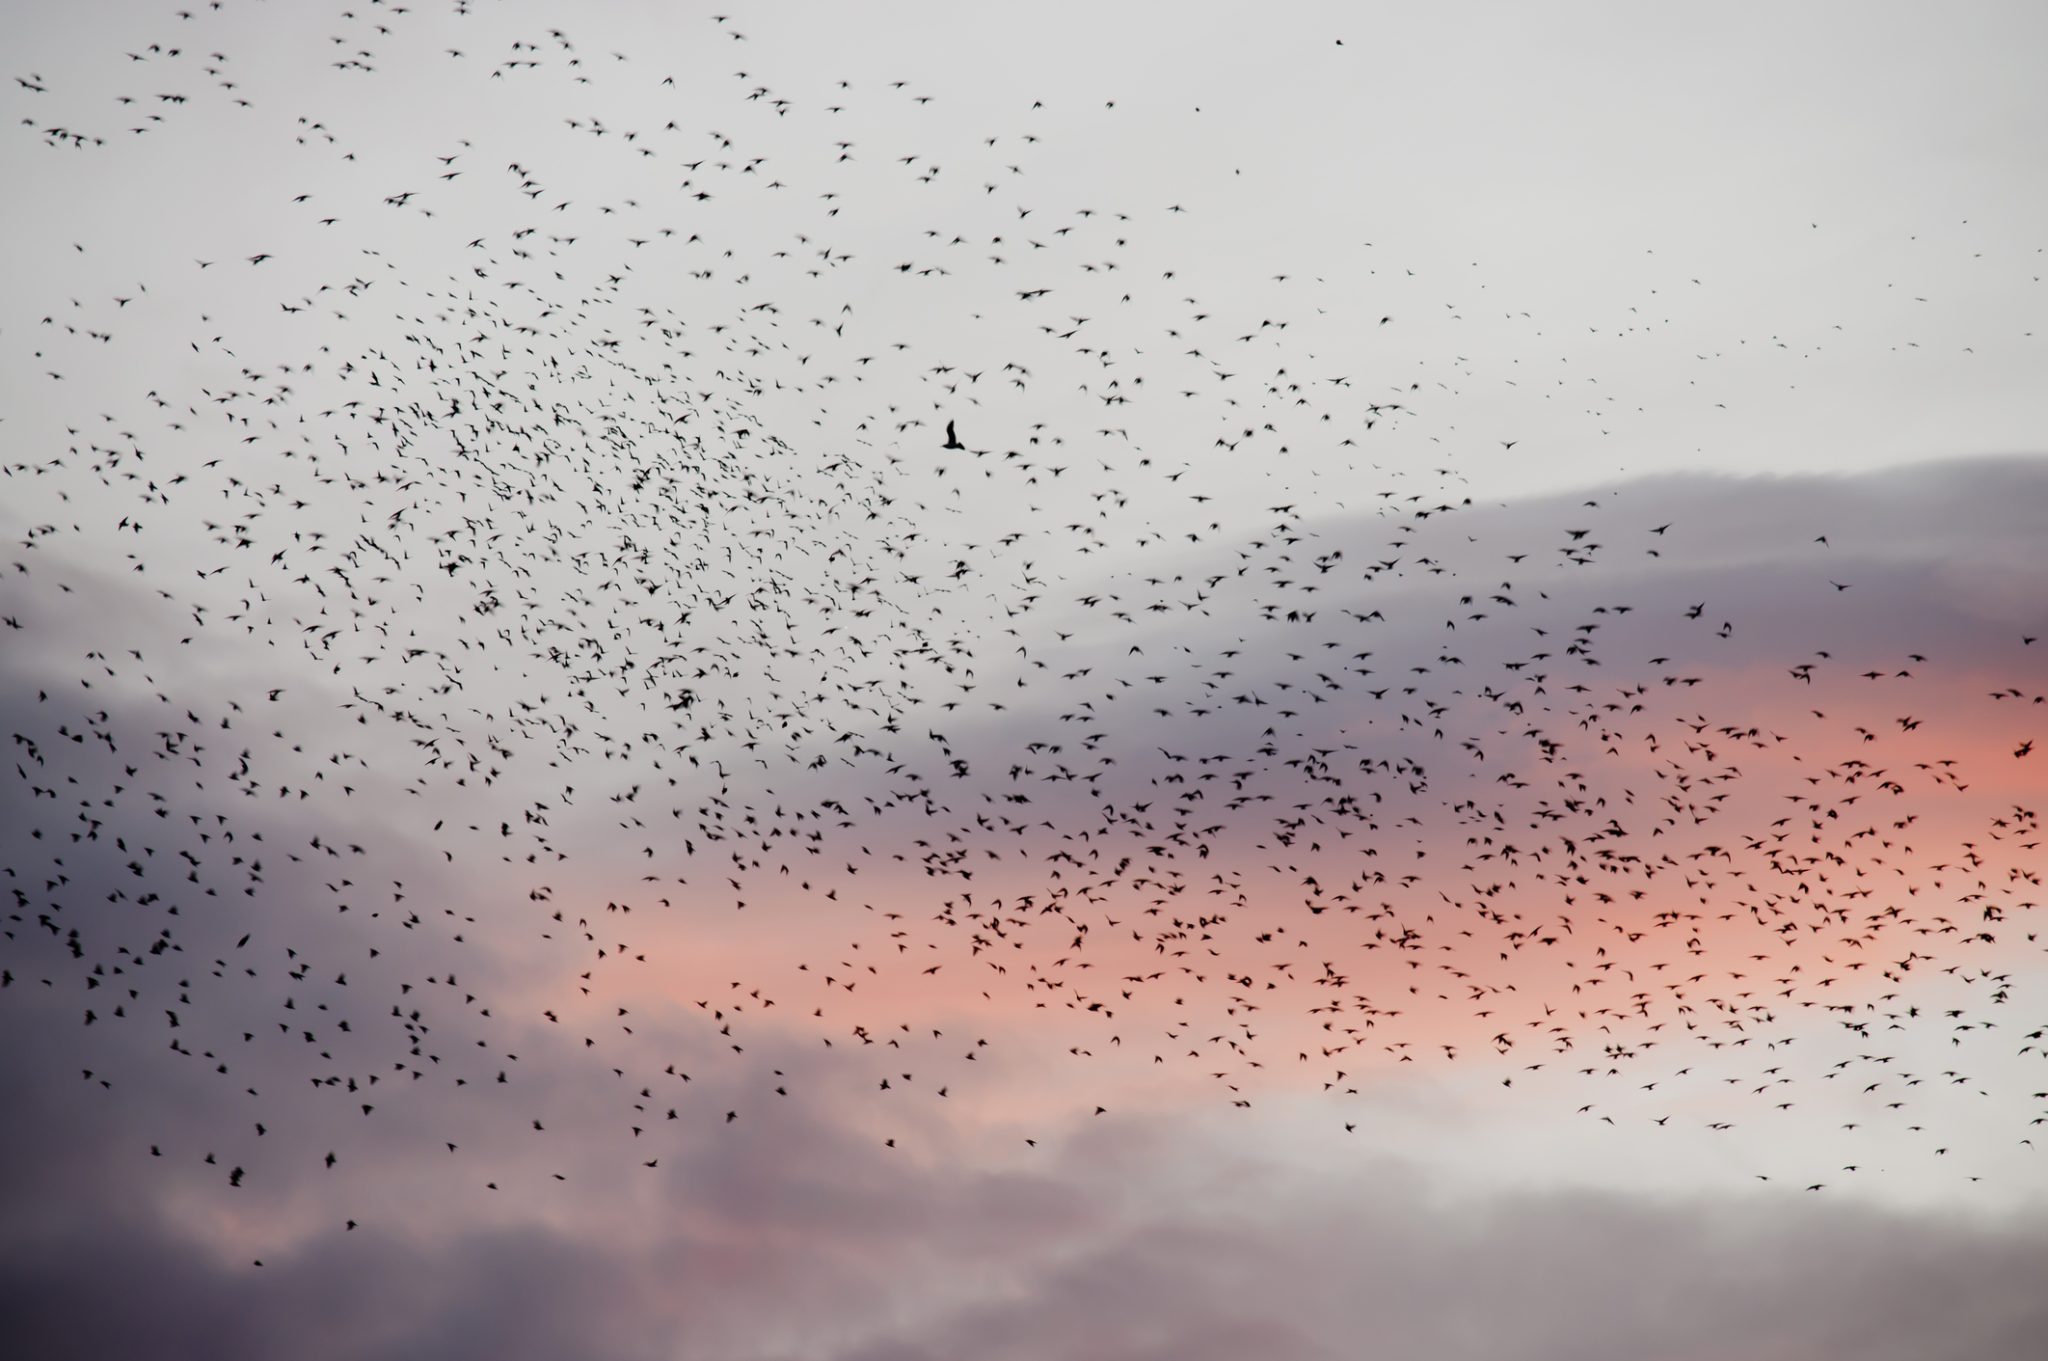 Flock of migrating birds at dusk